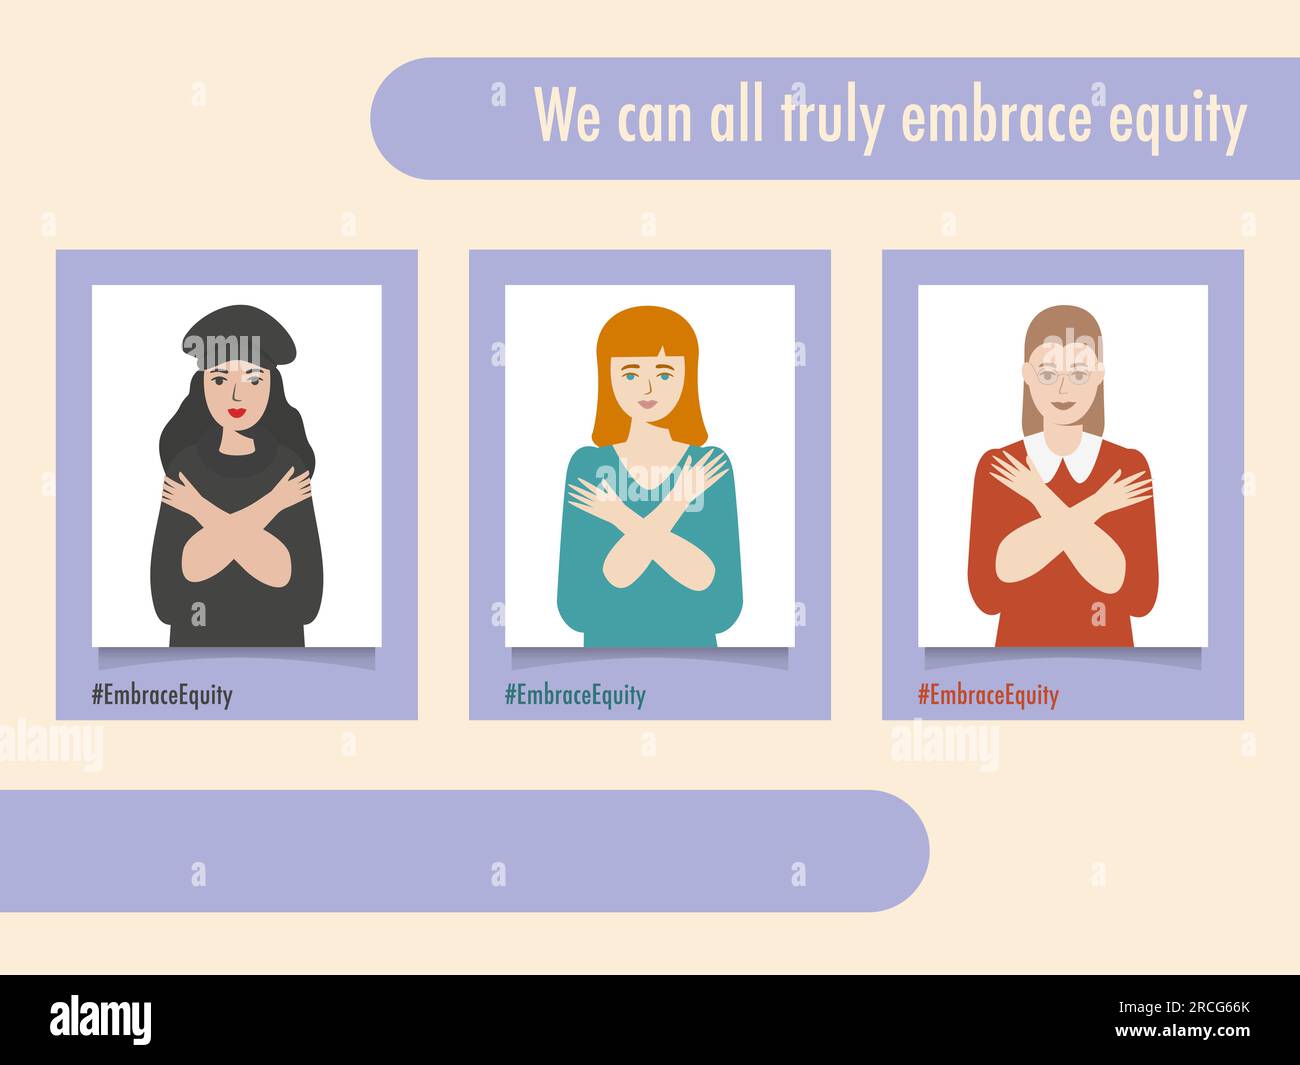 Les portraits de personnes #EmbraceEquity donnent à l'équité une énorme adhésion. Journée internationale de la femme 2023 embrasser l'équité. L'égalité des chances ne suffit plus VE Illustration de Vecteur